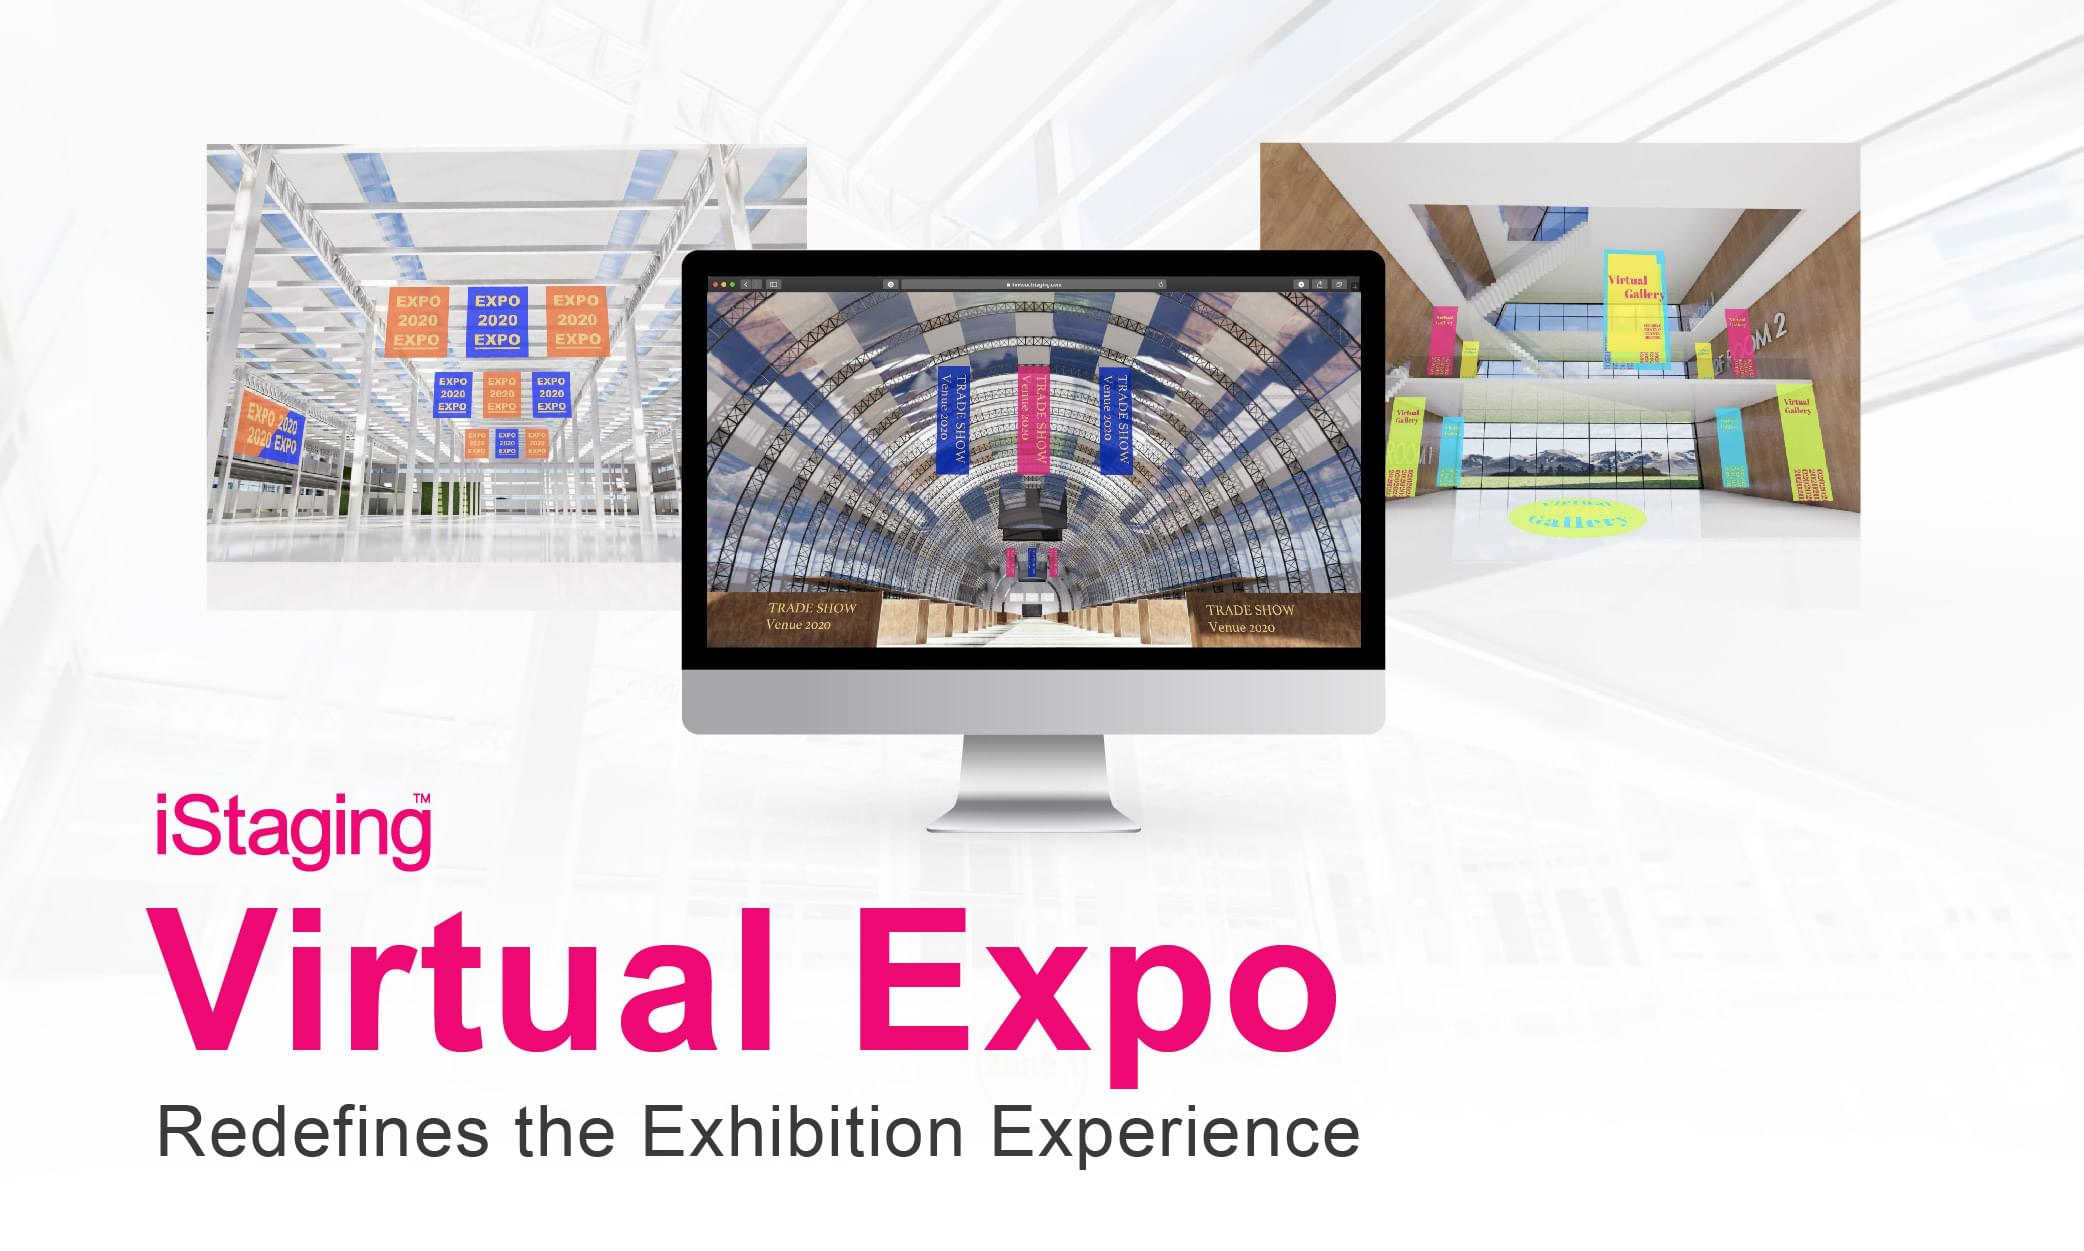 Virtual exhibition venue